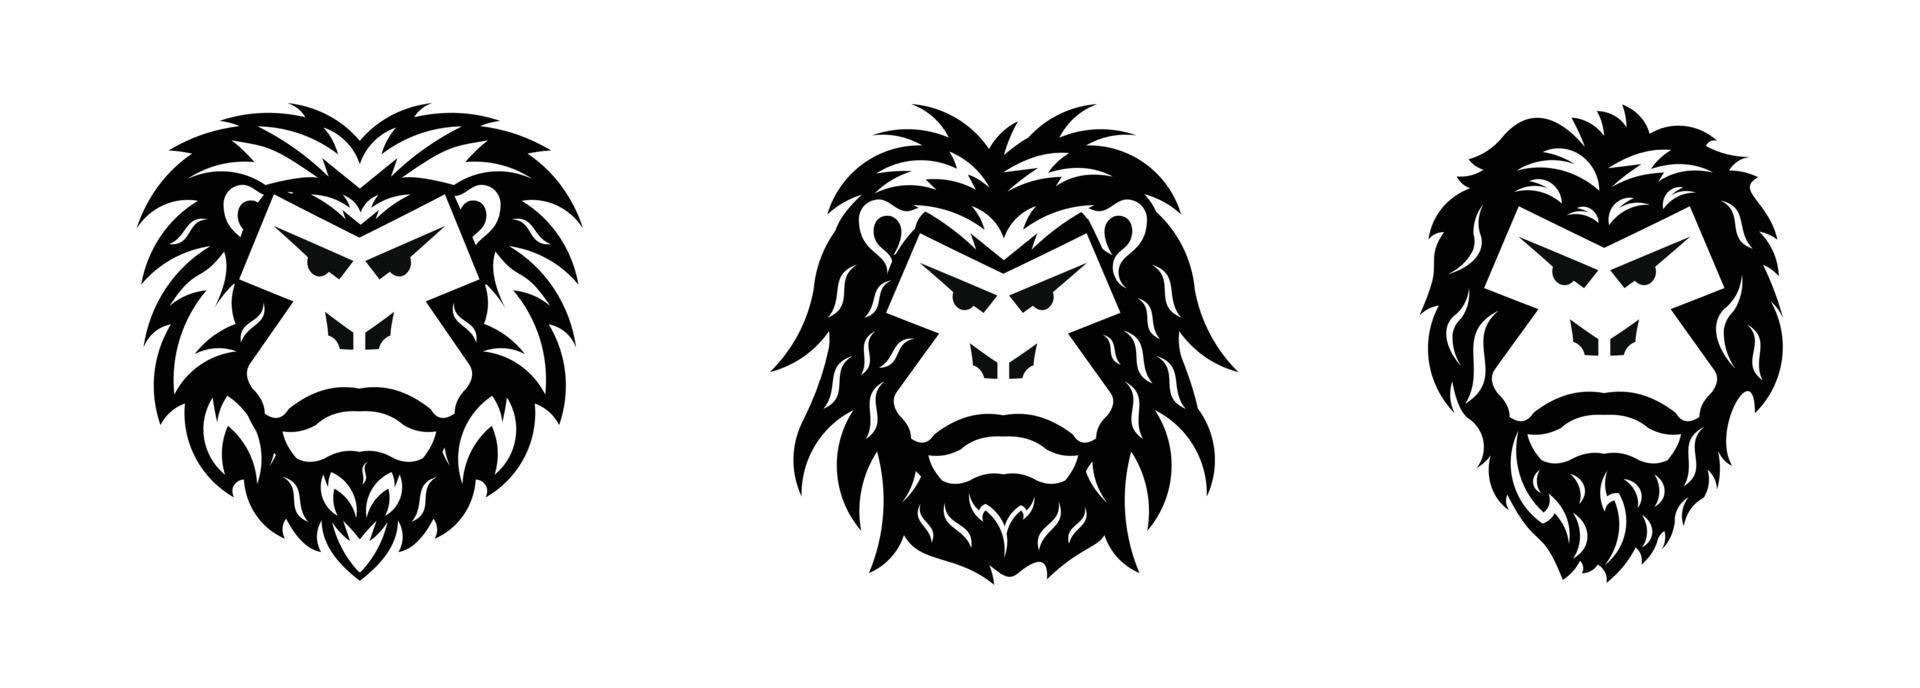 modelo de logotipo de cabeça de gorila,vetor de cabeça de gorila, vetor de cabeça de macaco, logotipo de cara de macaco